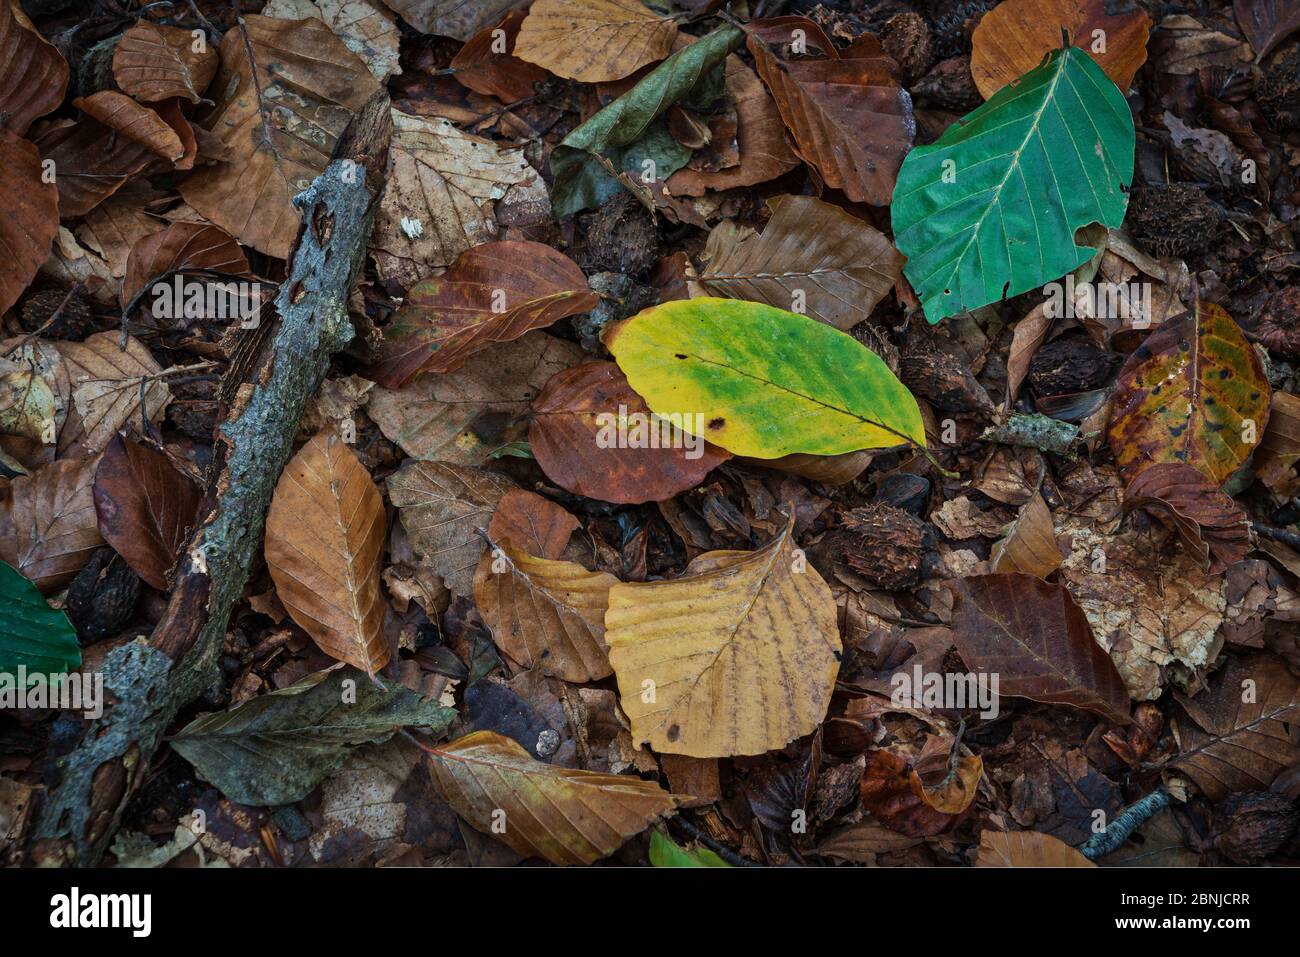 SPEULDERBOS, Gelderland, Paesi Bassi - 23 ottobre 2019 : foglie d'autunno sul fondo della foresta Foto Stock